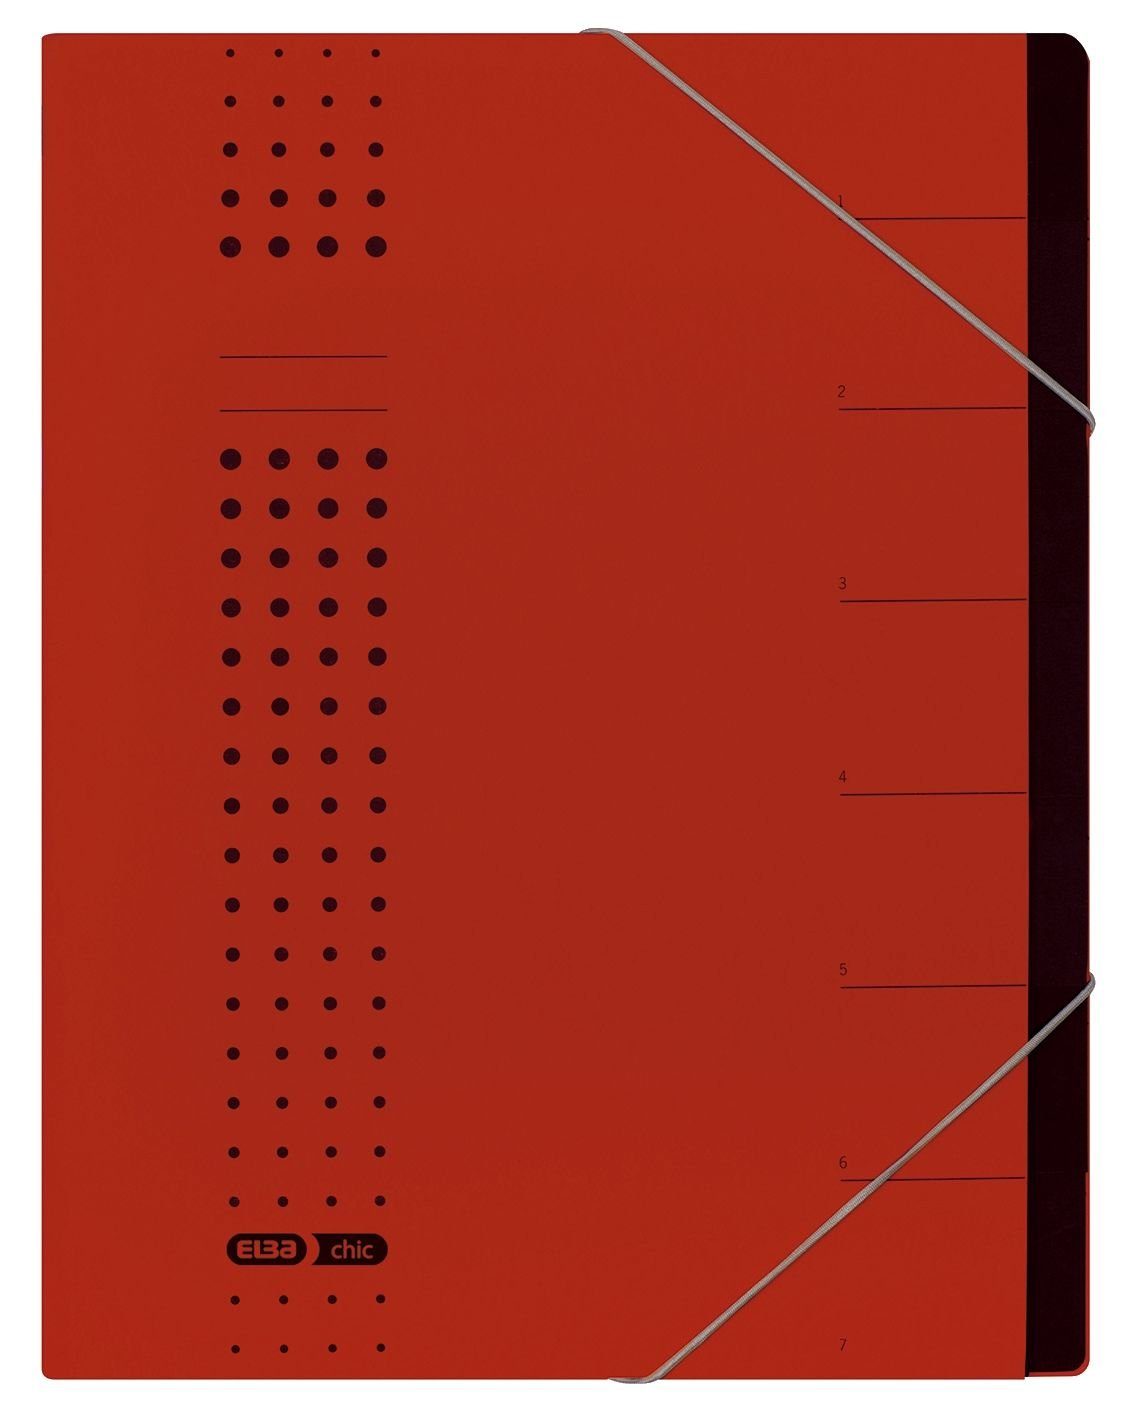 ELBA Schreibmappe ELBA chic-Ordnungsmappe, A4 rot, Fächer 1-7, Karton